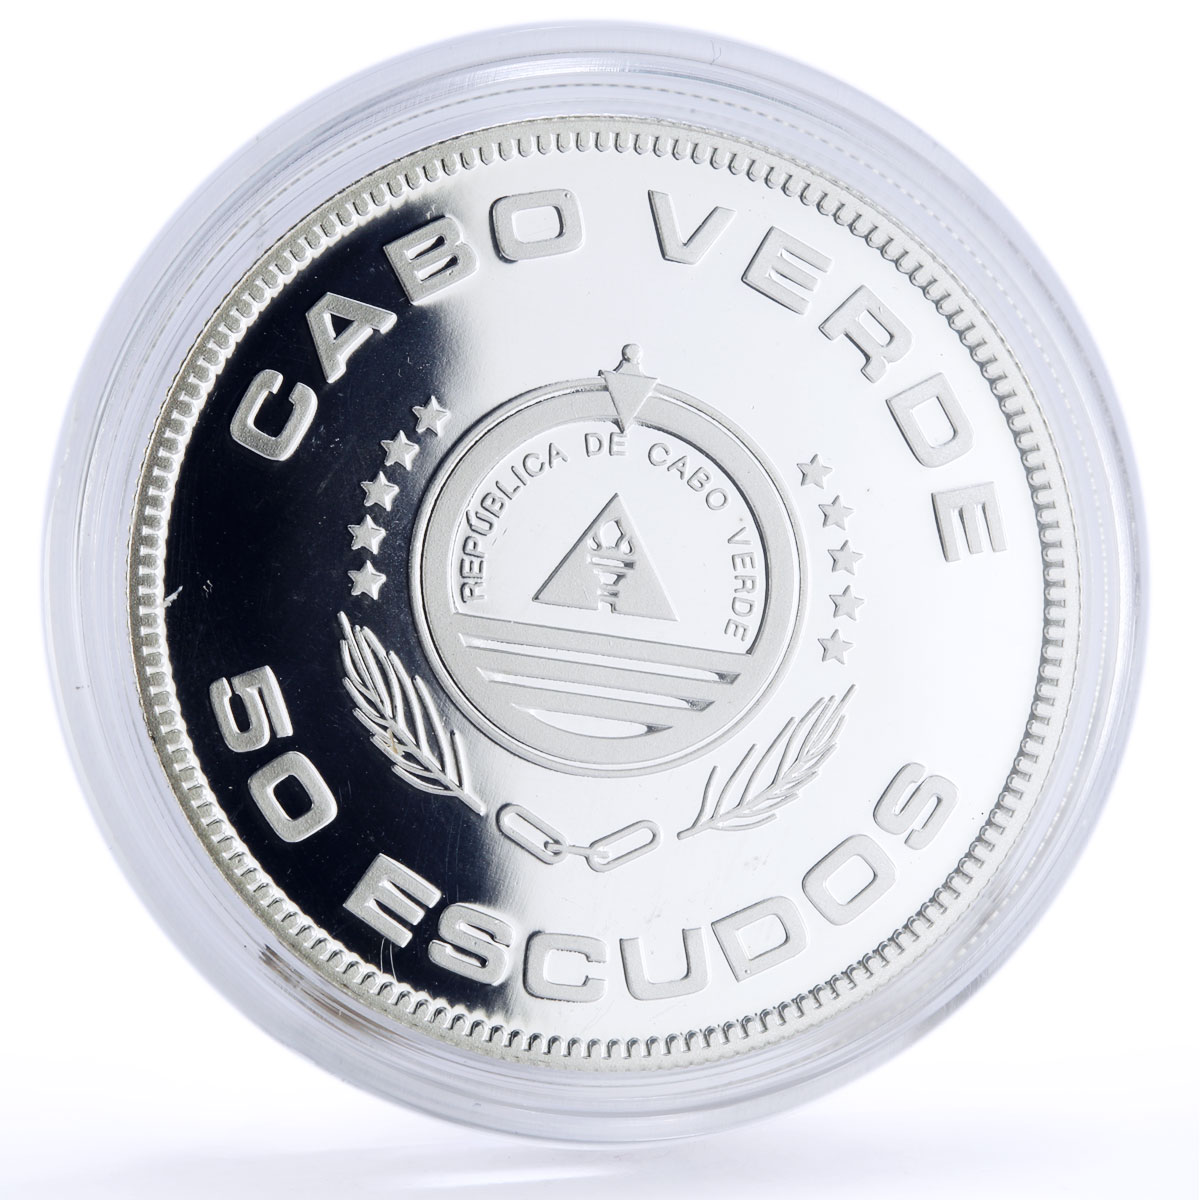 Cape Verde 50 escudos Seafaring Santa Maria Ship Columbus proof silver coin 2006